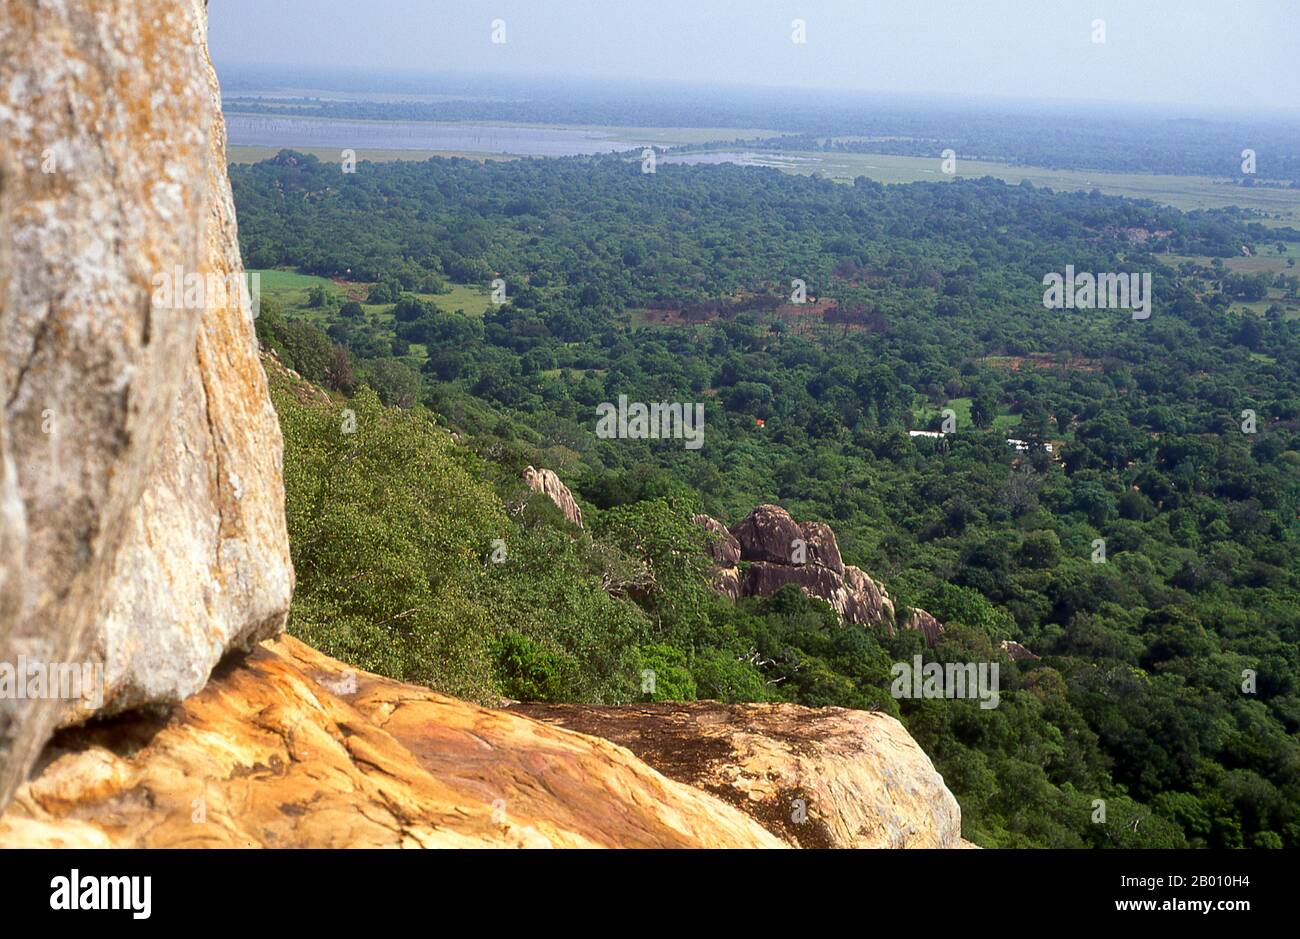 Sri Lanka : visiteurs au sommet du Gala Aradhana (Rock de méditation), Mihintale. Mihintale est un sommet de montagne près d'Anuradhapura qui est considéré par Sri Lankans comme le site d'une rencontre entre le moine bouddhiste Mahinda et le roi Devanampiyatissa qui a inauguré la présence du bouddhisme au Sri Lanka. C'est maintenant un lieu de pèlerinage, et le site de plusieurs monuments religieux et structures abandonnées. Banque D'Images